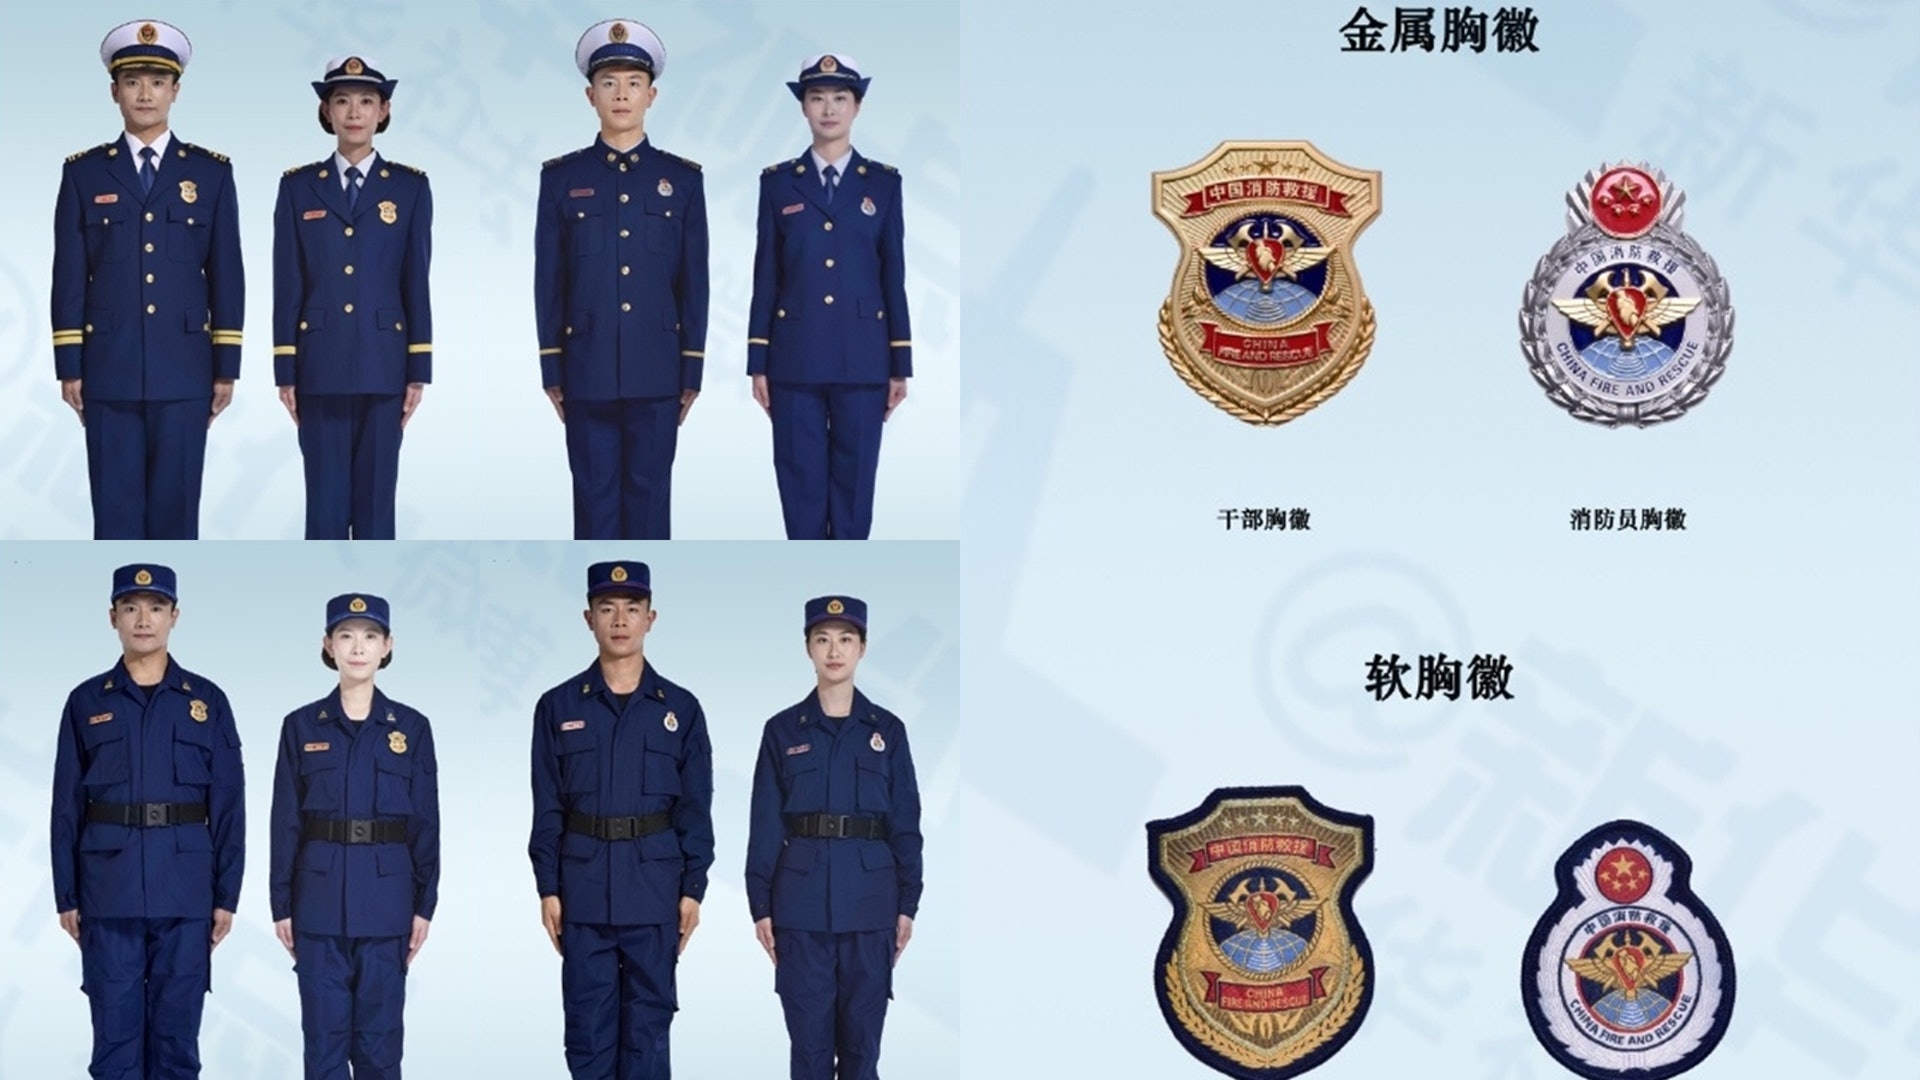 圖輯 中國消防員正式移交應急部火焰藍色新制服突顯職業特性